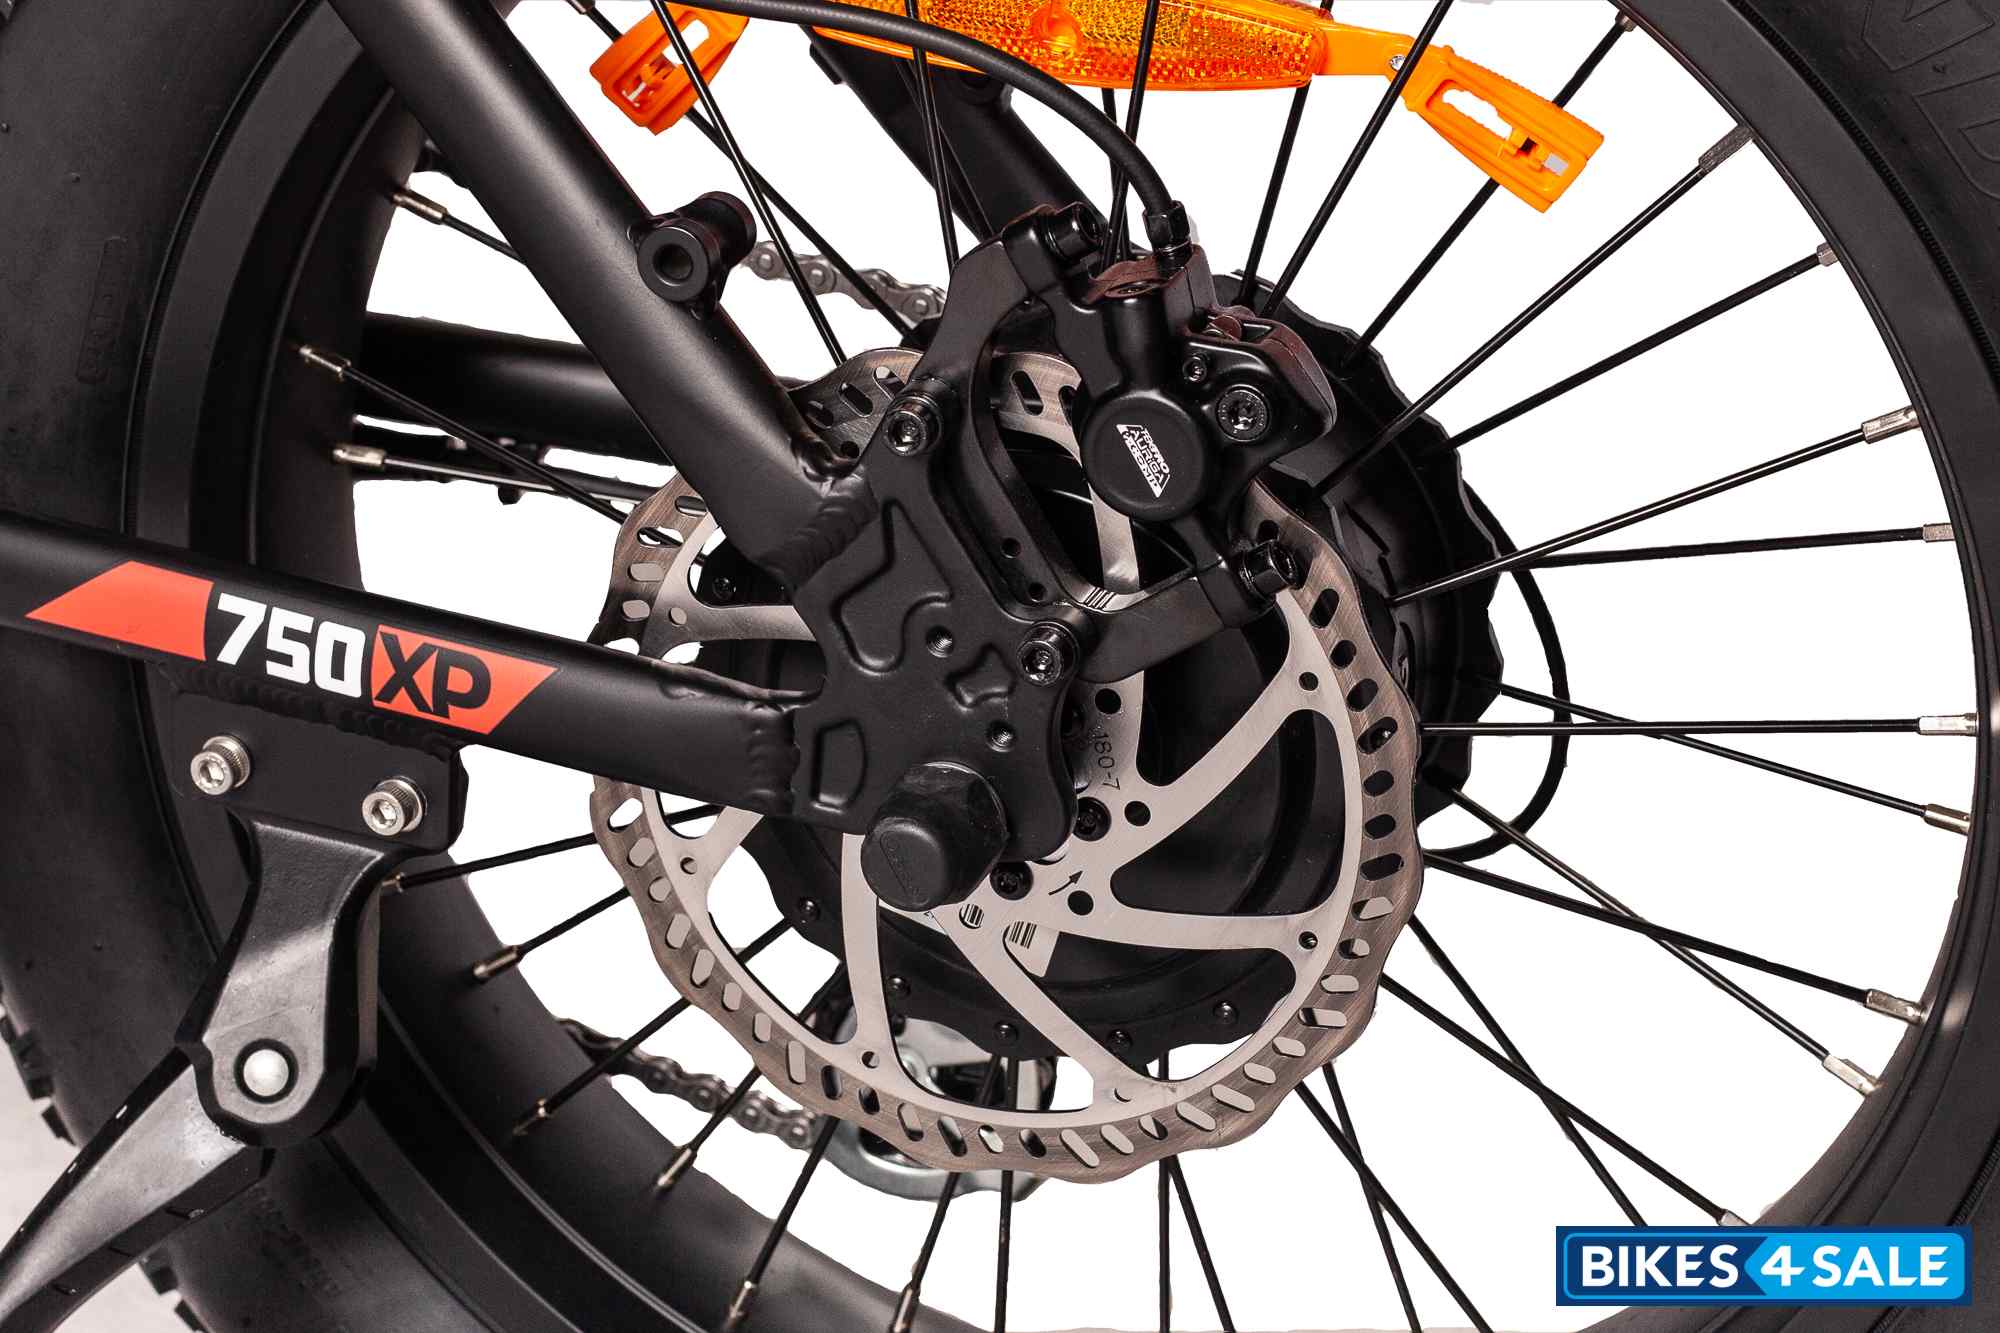 CSC XP750-20 BMX Bar Fat Tire E-Bike - Tektro E-500 Brakes